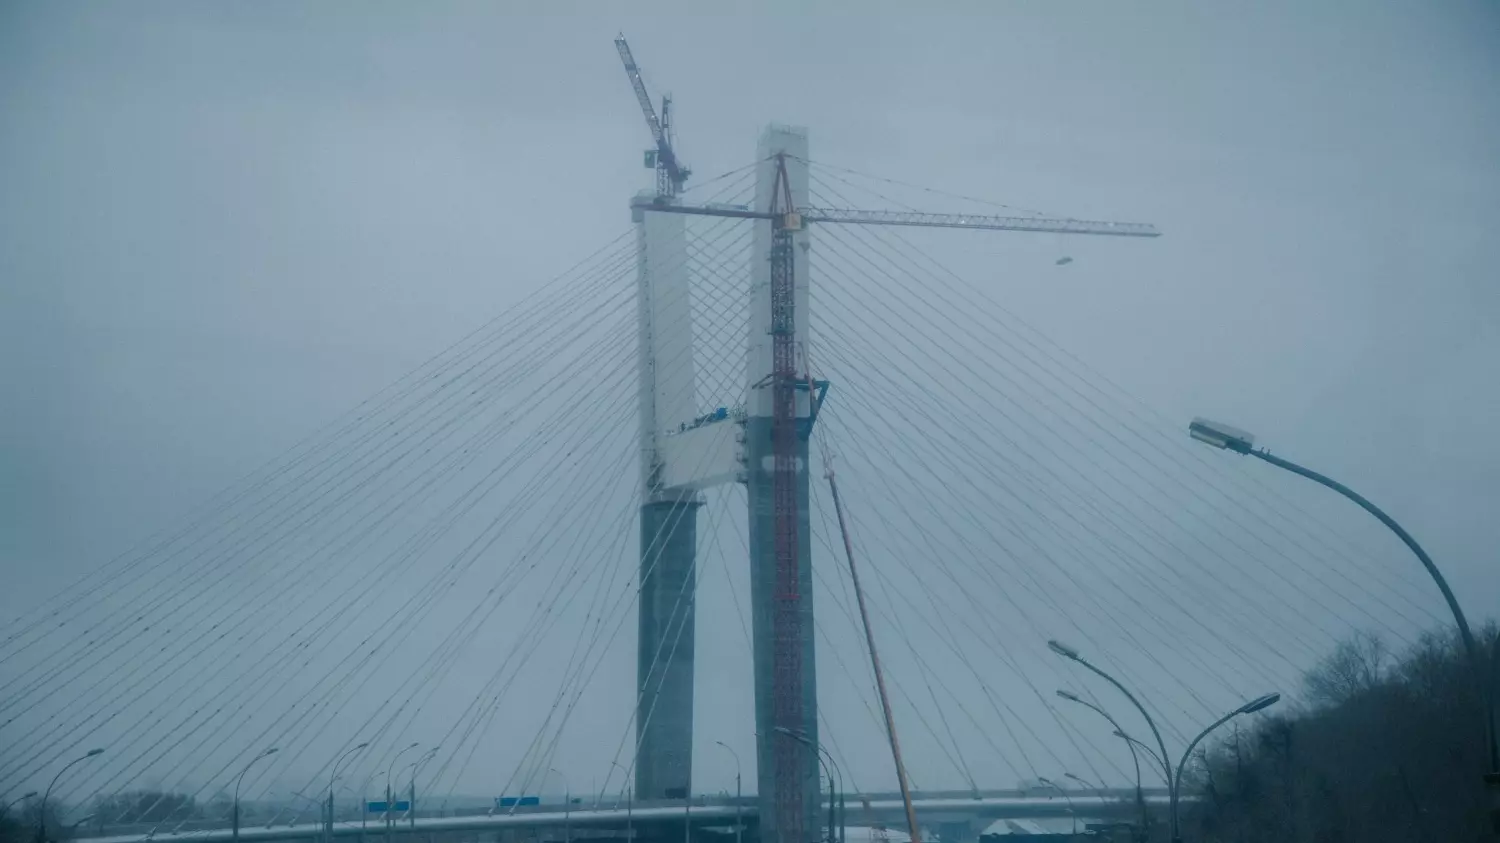 Планы на четвертый мост появились в 2008 году